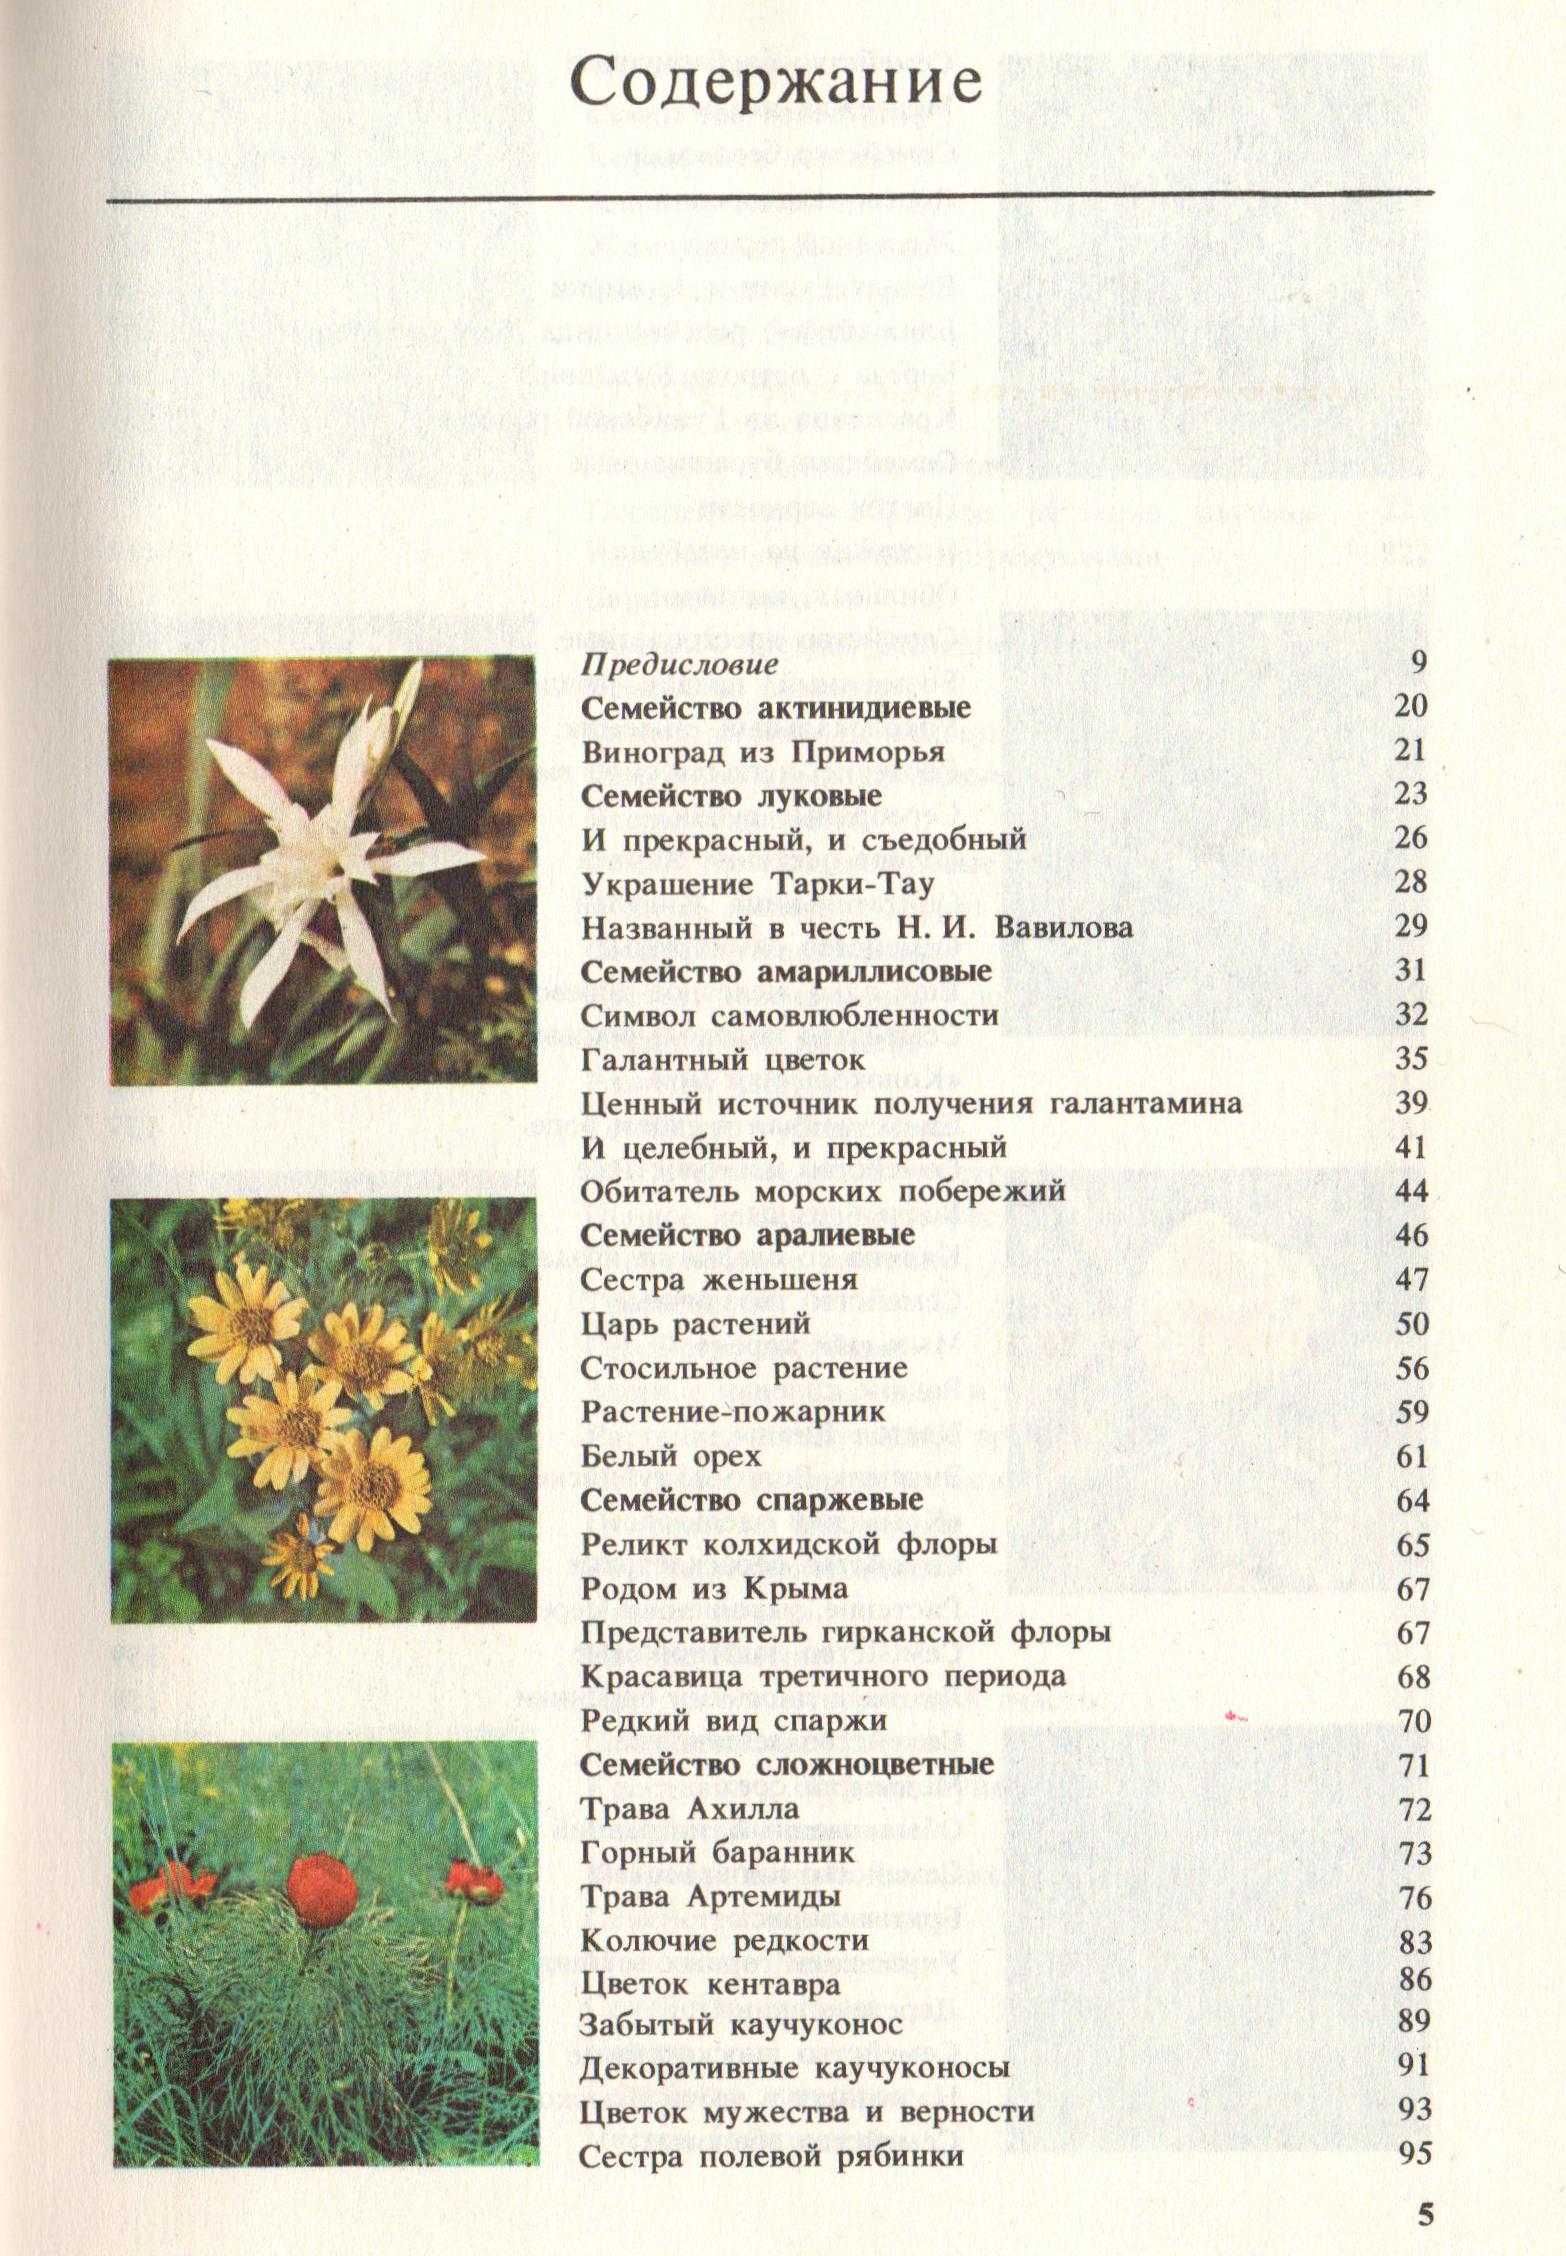 Книга «Редкие и исчезающие растения» по страницам красной книги